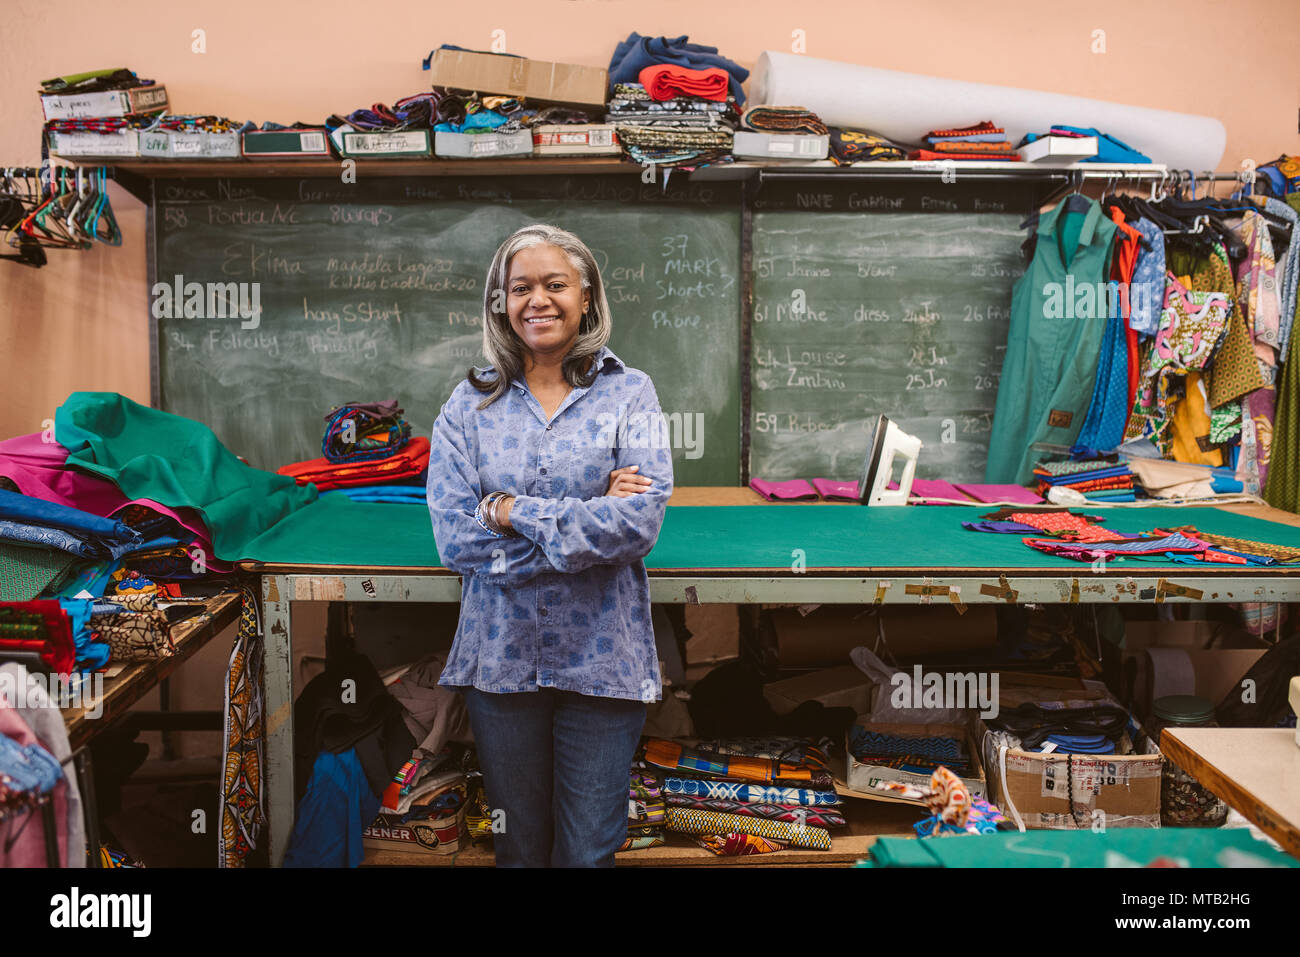 Porträt eines lächelnden reife Näherin stehen mit ihren Armen durch einen Tisch in Ihrem Workshop von bunten Material umgeben gekreuzt Stockfoto